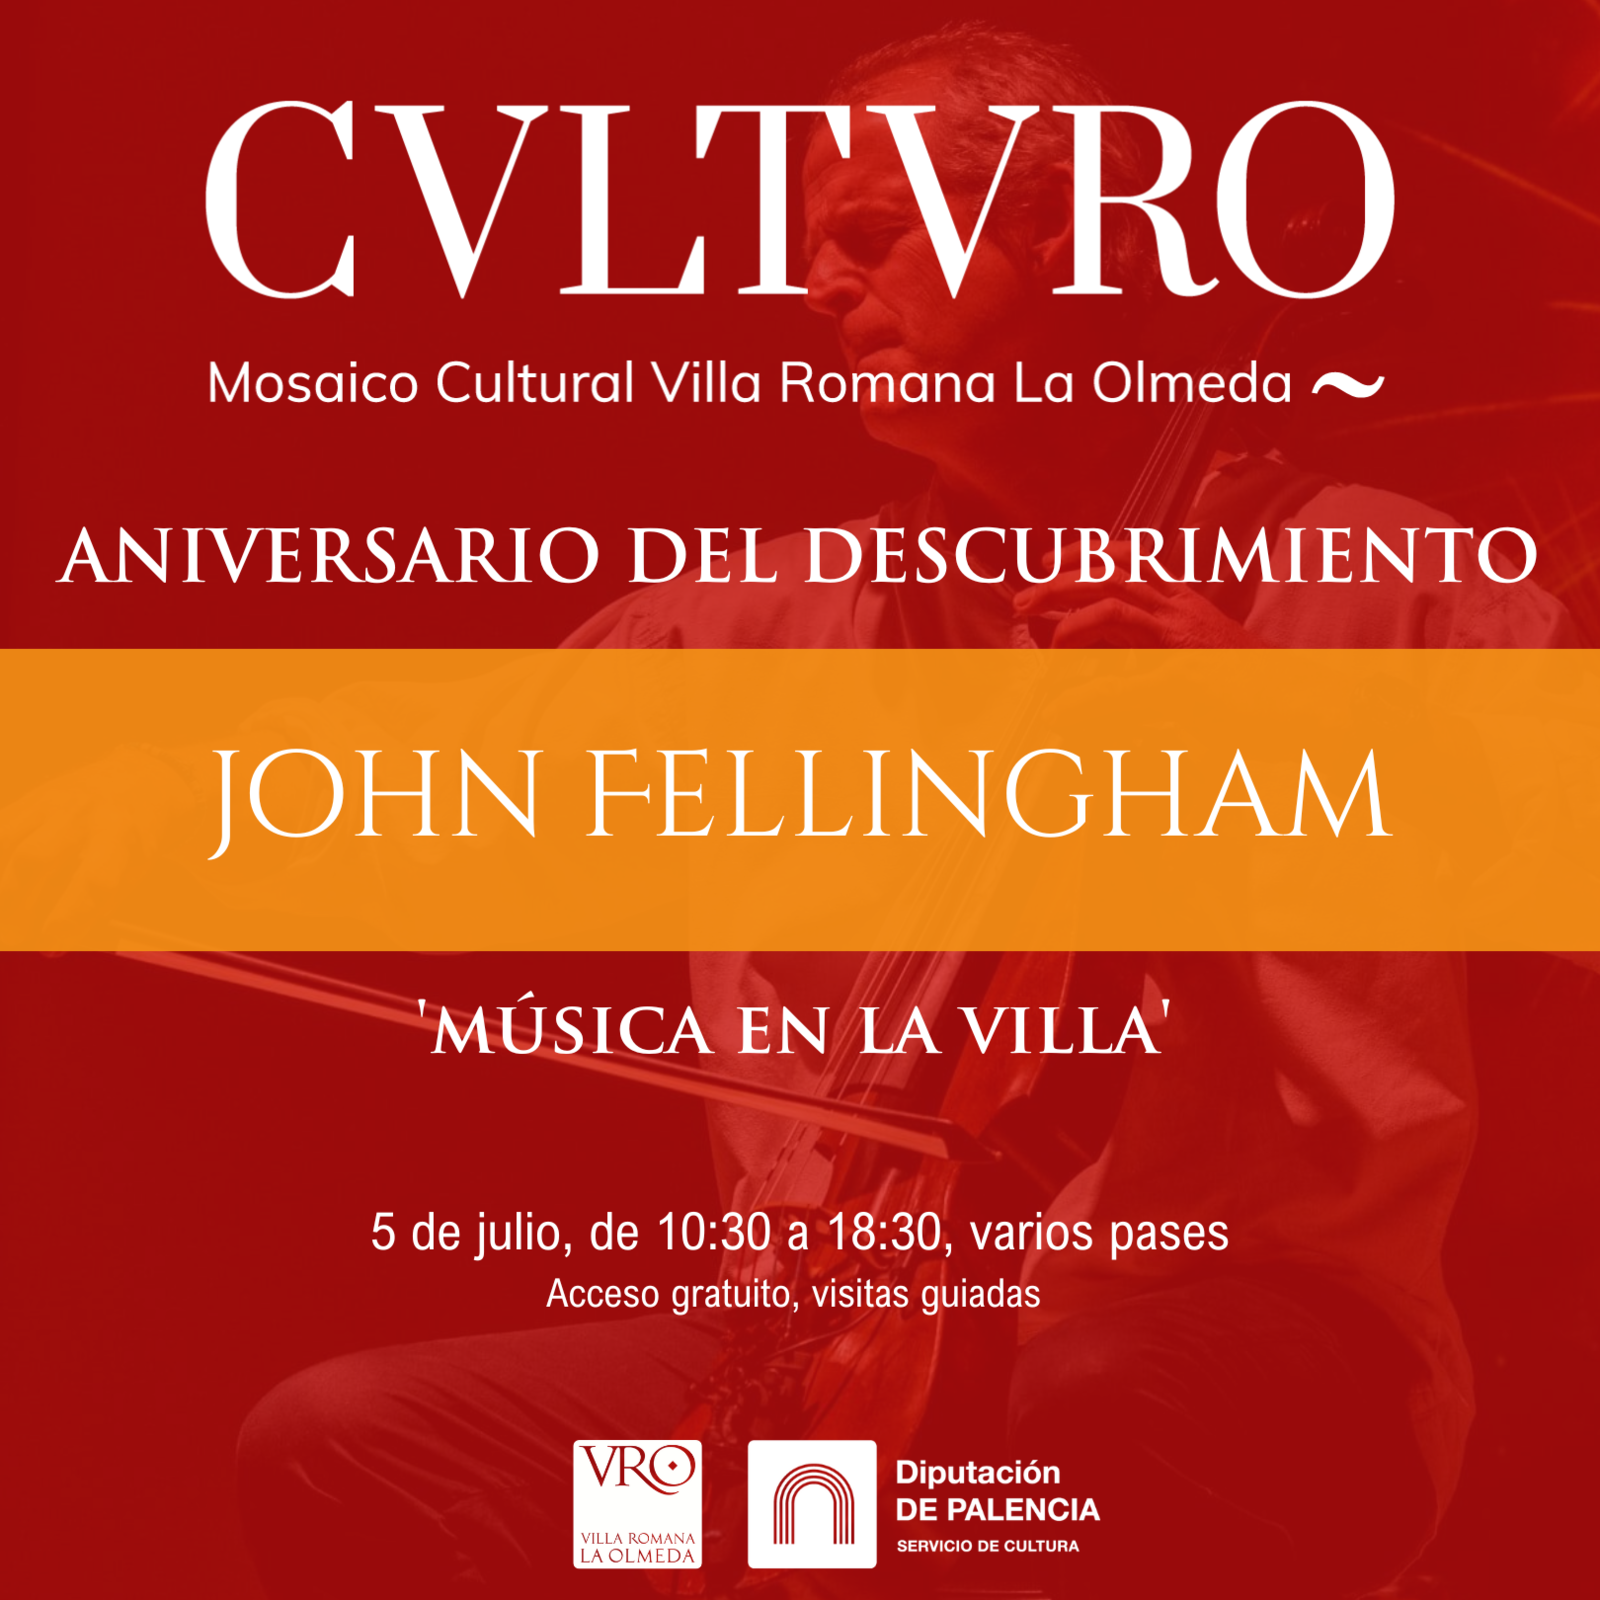 El libro “Teselas, más que piedras” y la música de John Fellingham conmemoran el 55º aniversario